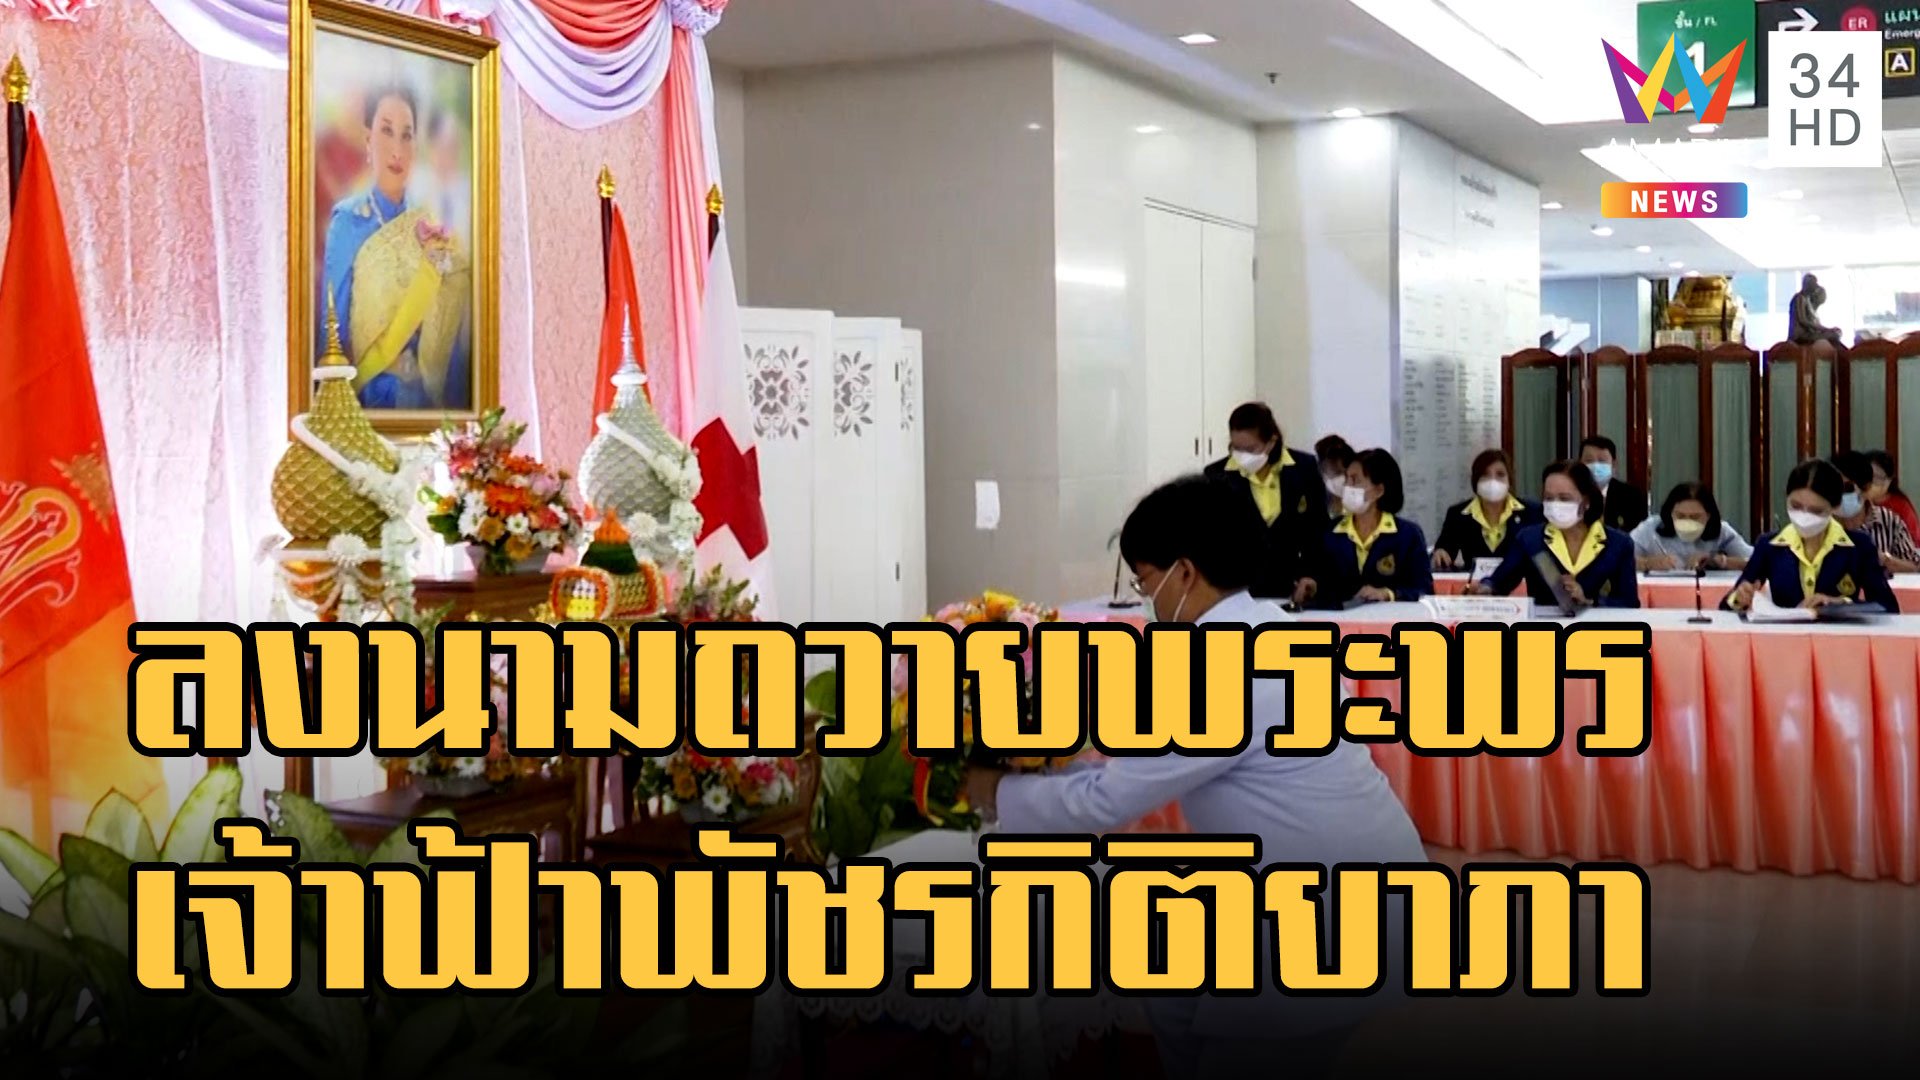 สภากาชาดไทย เปิดลงนามถวายพระพร สมเด็จเจ้าฟ้าพัชรกิติยาภา | ข่าวเที่ยงอมรินทร์ | 16 ธ.ค. 65 | AMARIN TVHD34